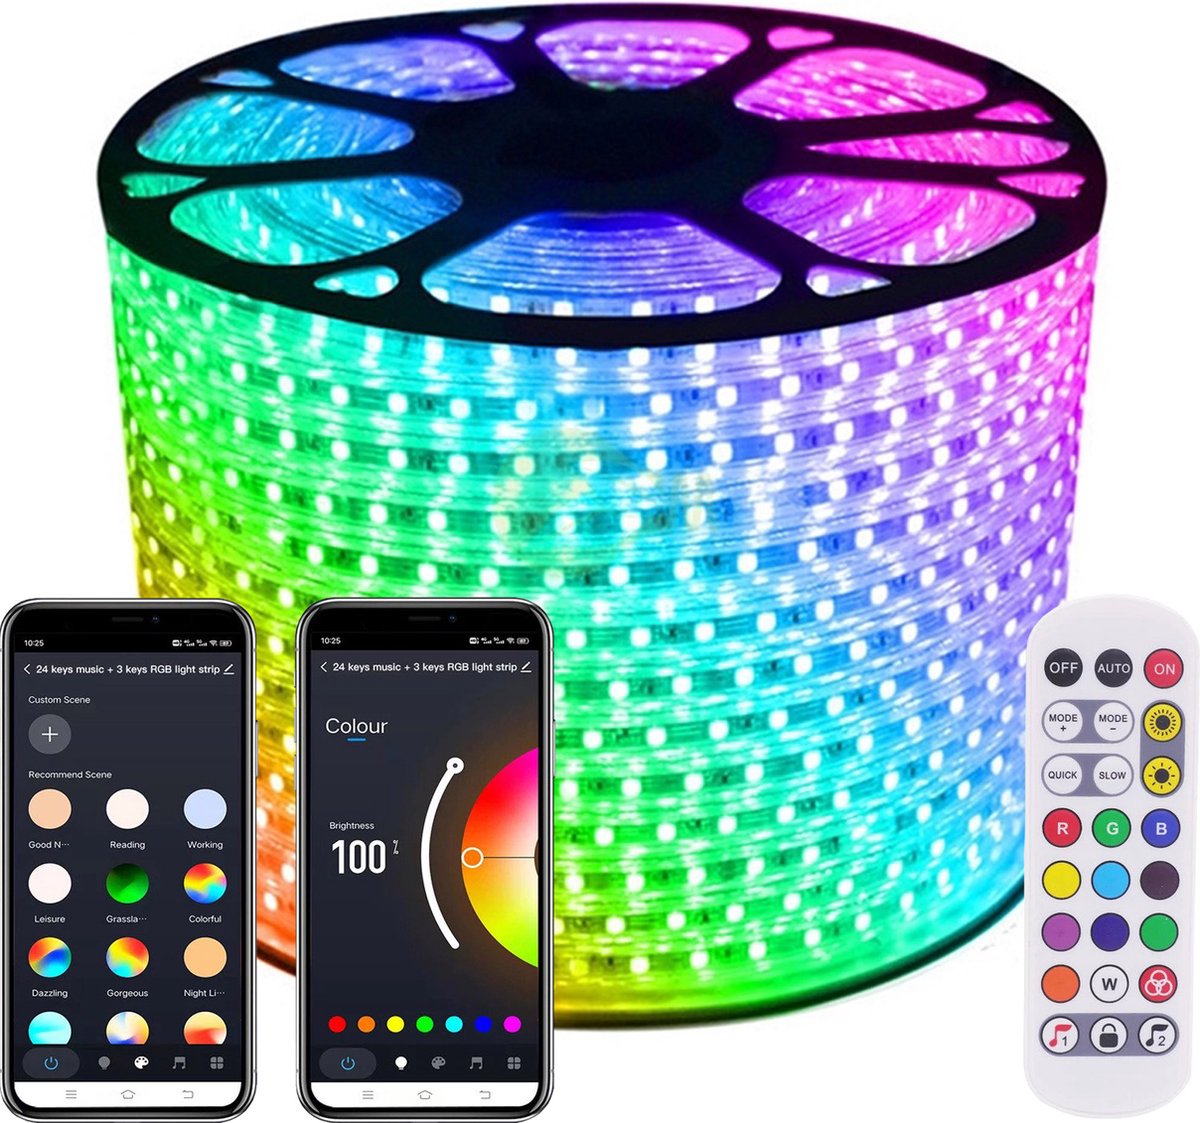 LED Strip RGB - 45 Meter aan één stuk - 16Miljoen kleuren - Met Wi-Fi App + IR 24 knops afstandsbediening - Smarthome - Google Home/Amazon Alexa - Waterdicht - Makkelijke mobiele App voor bedienen inclusief afstandsbediening - iOS en Android